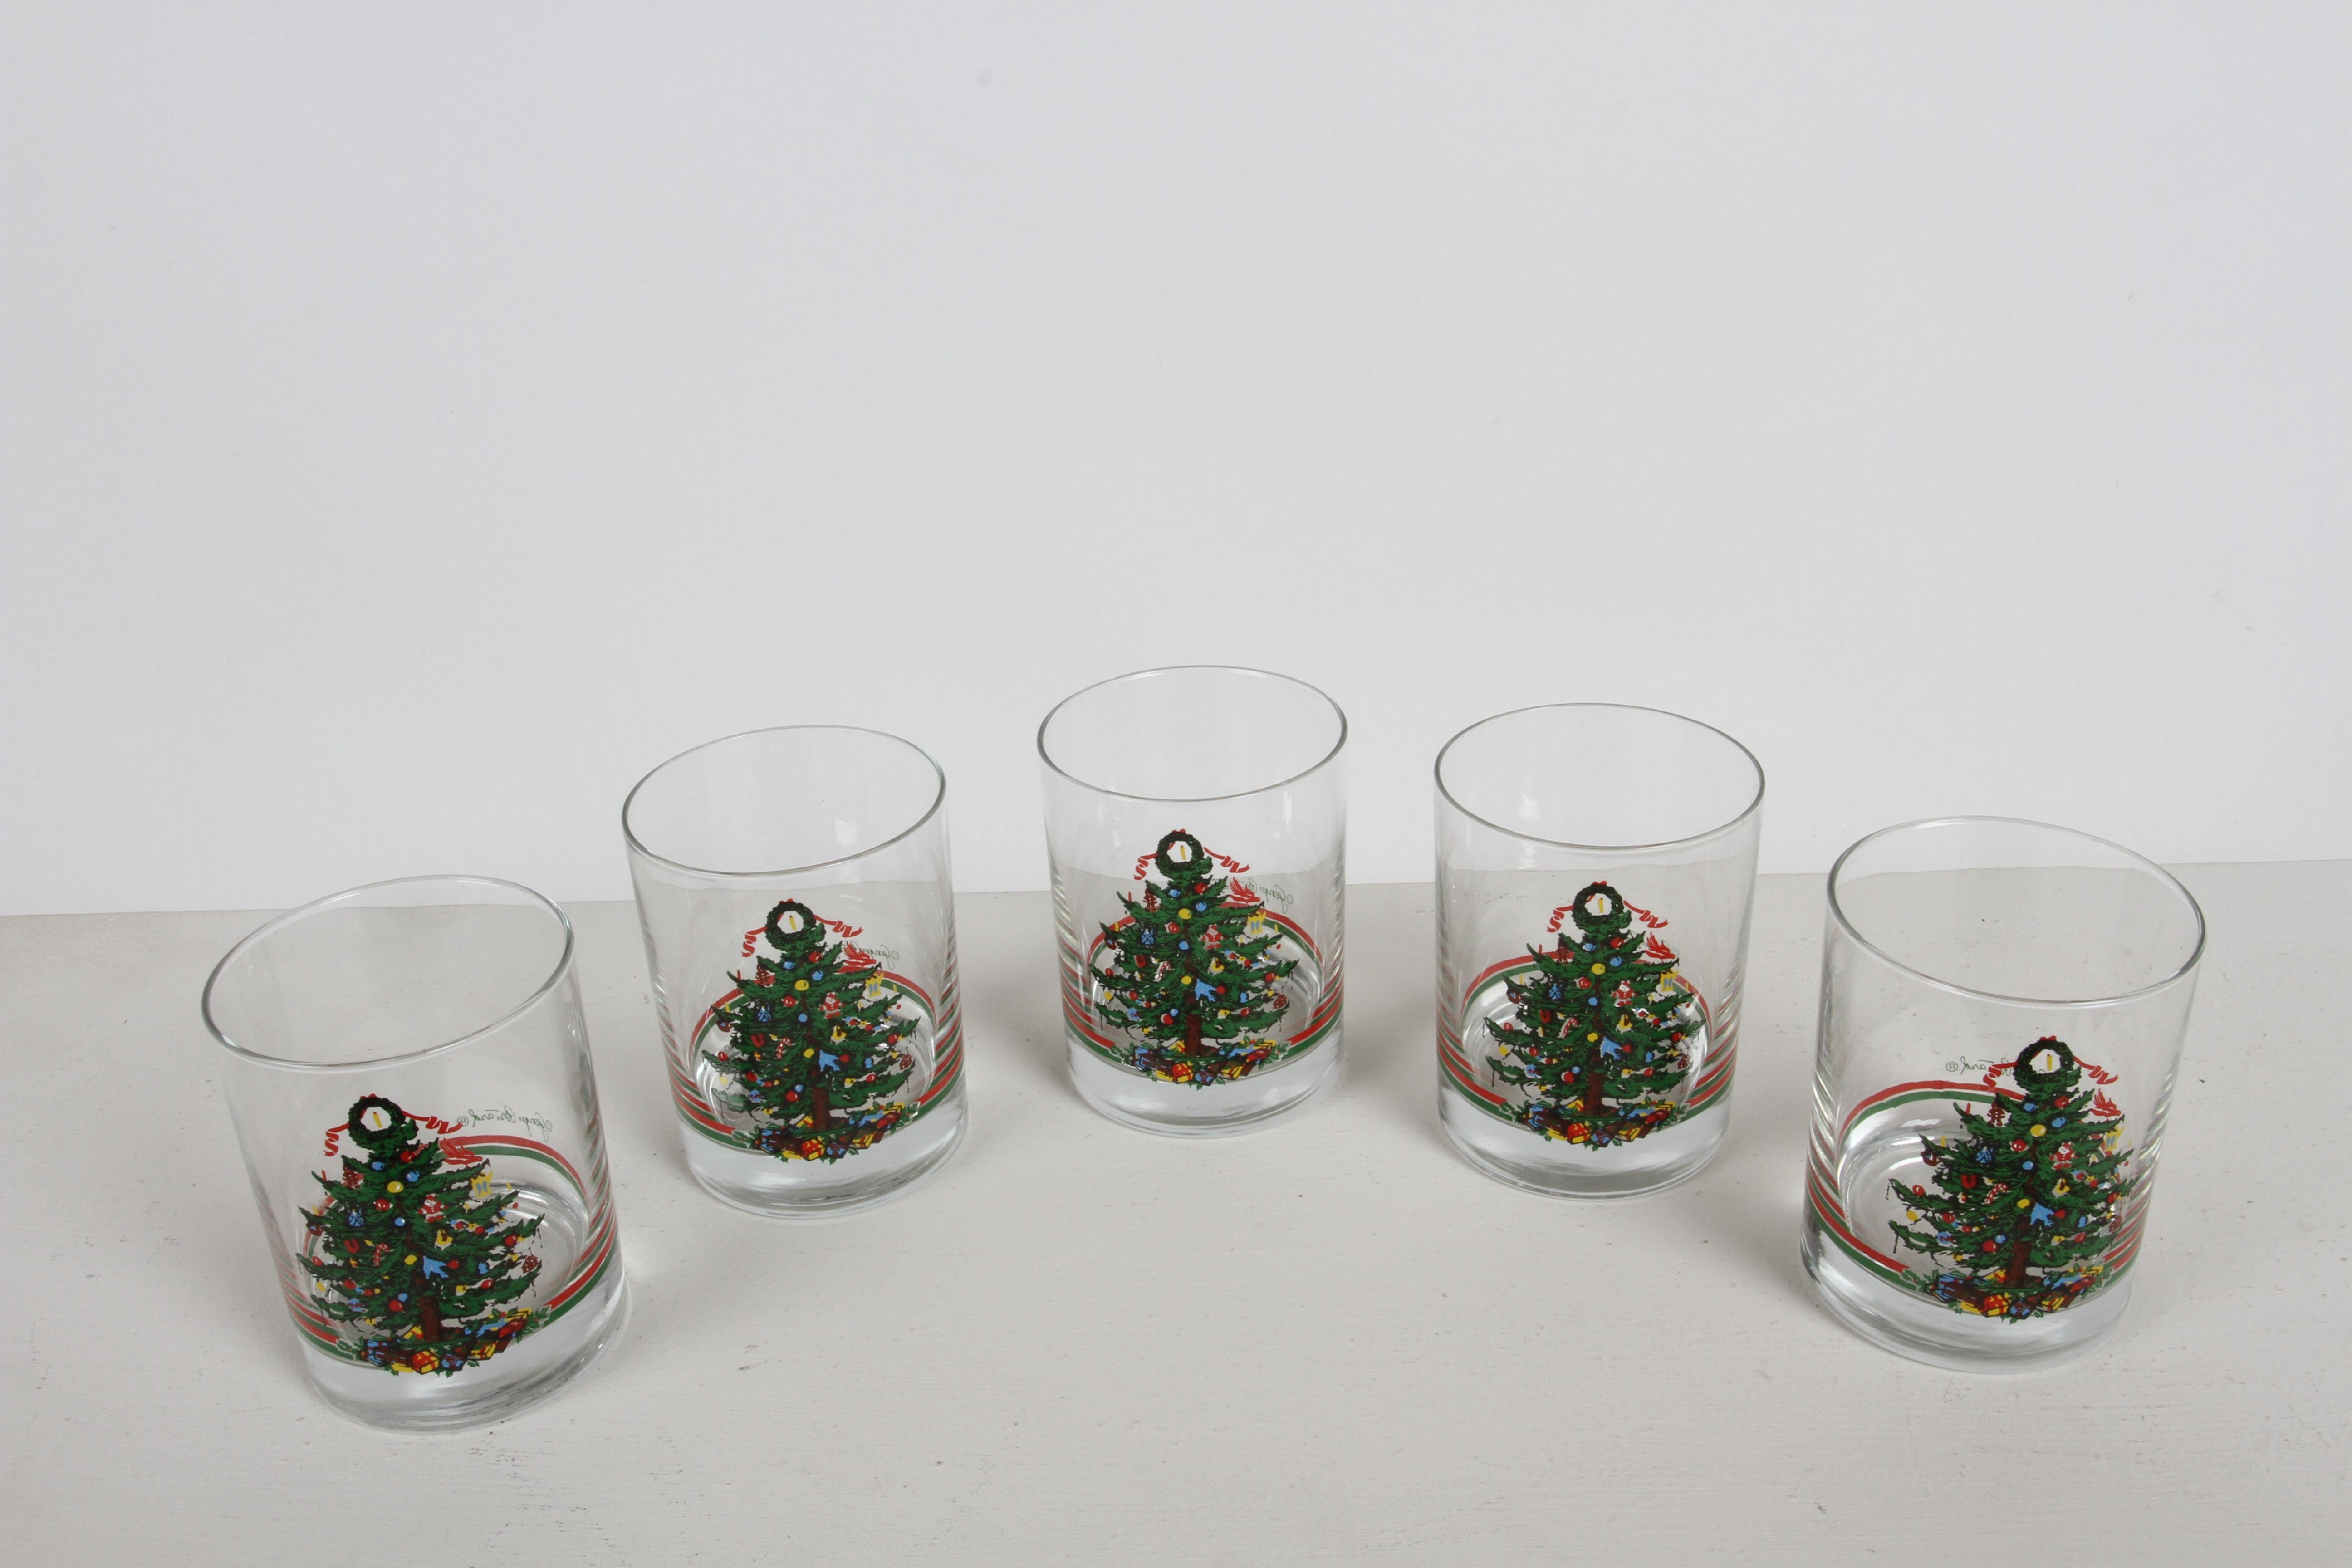 Vintage 1980s Weihnachten / Urlaub Thema Barware Gläser von Georges Briard und im Einzelhandel von Neiman Marcus. Set mit 5 Gläsern für Rocks, Old Fashion oder Low Balls. Weihnachtsbäume, die mit Ornamenten geschmückt sind, wie Lebkuchenmännchen und